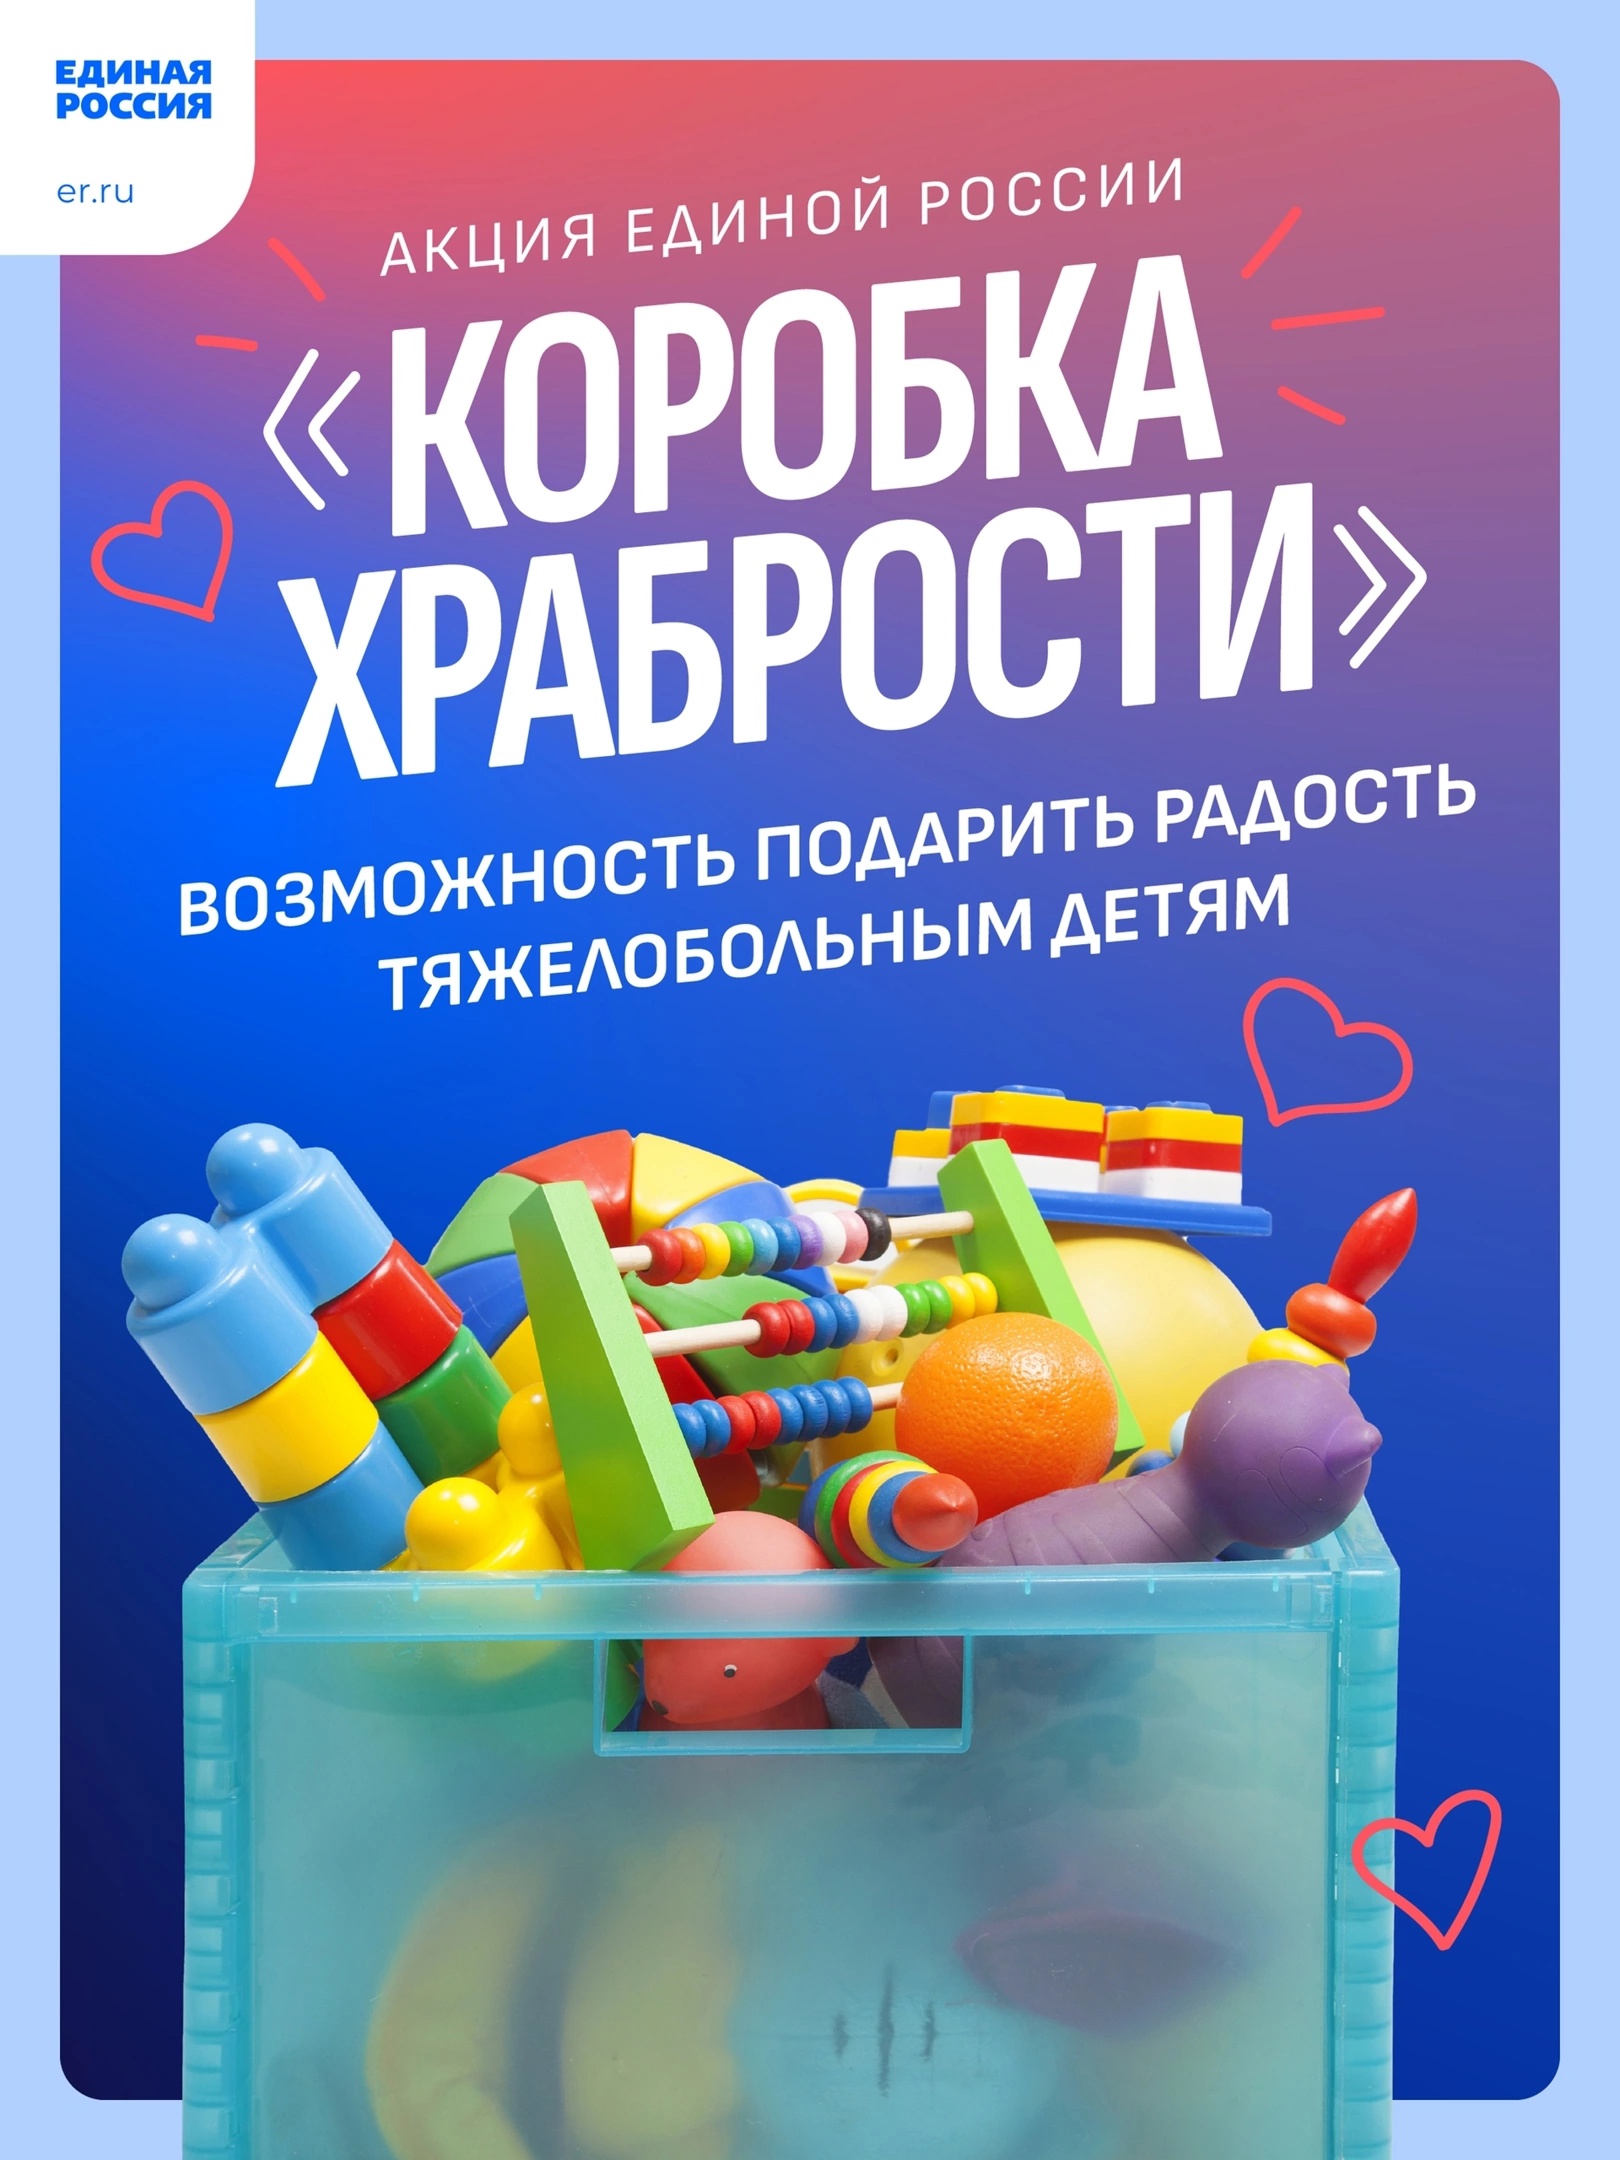 Единая Россия вместе со сторонниками партии запустила акцию «Коробка храбрости».